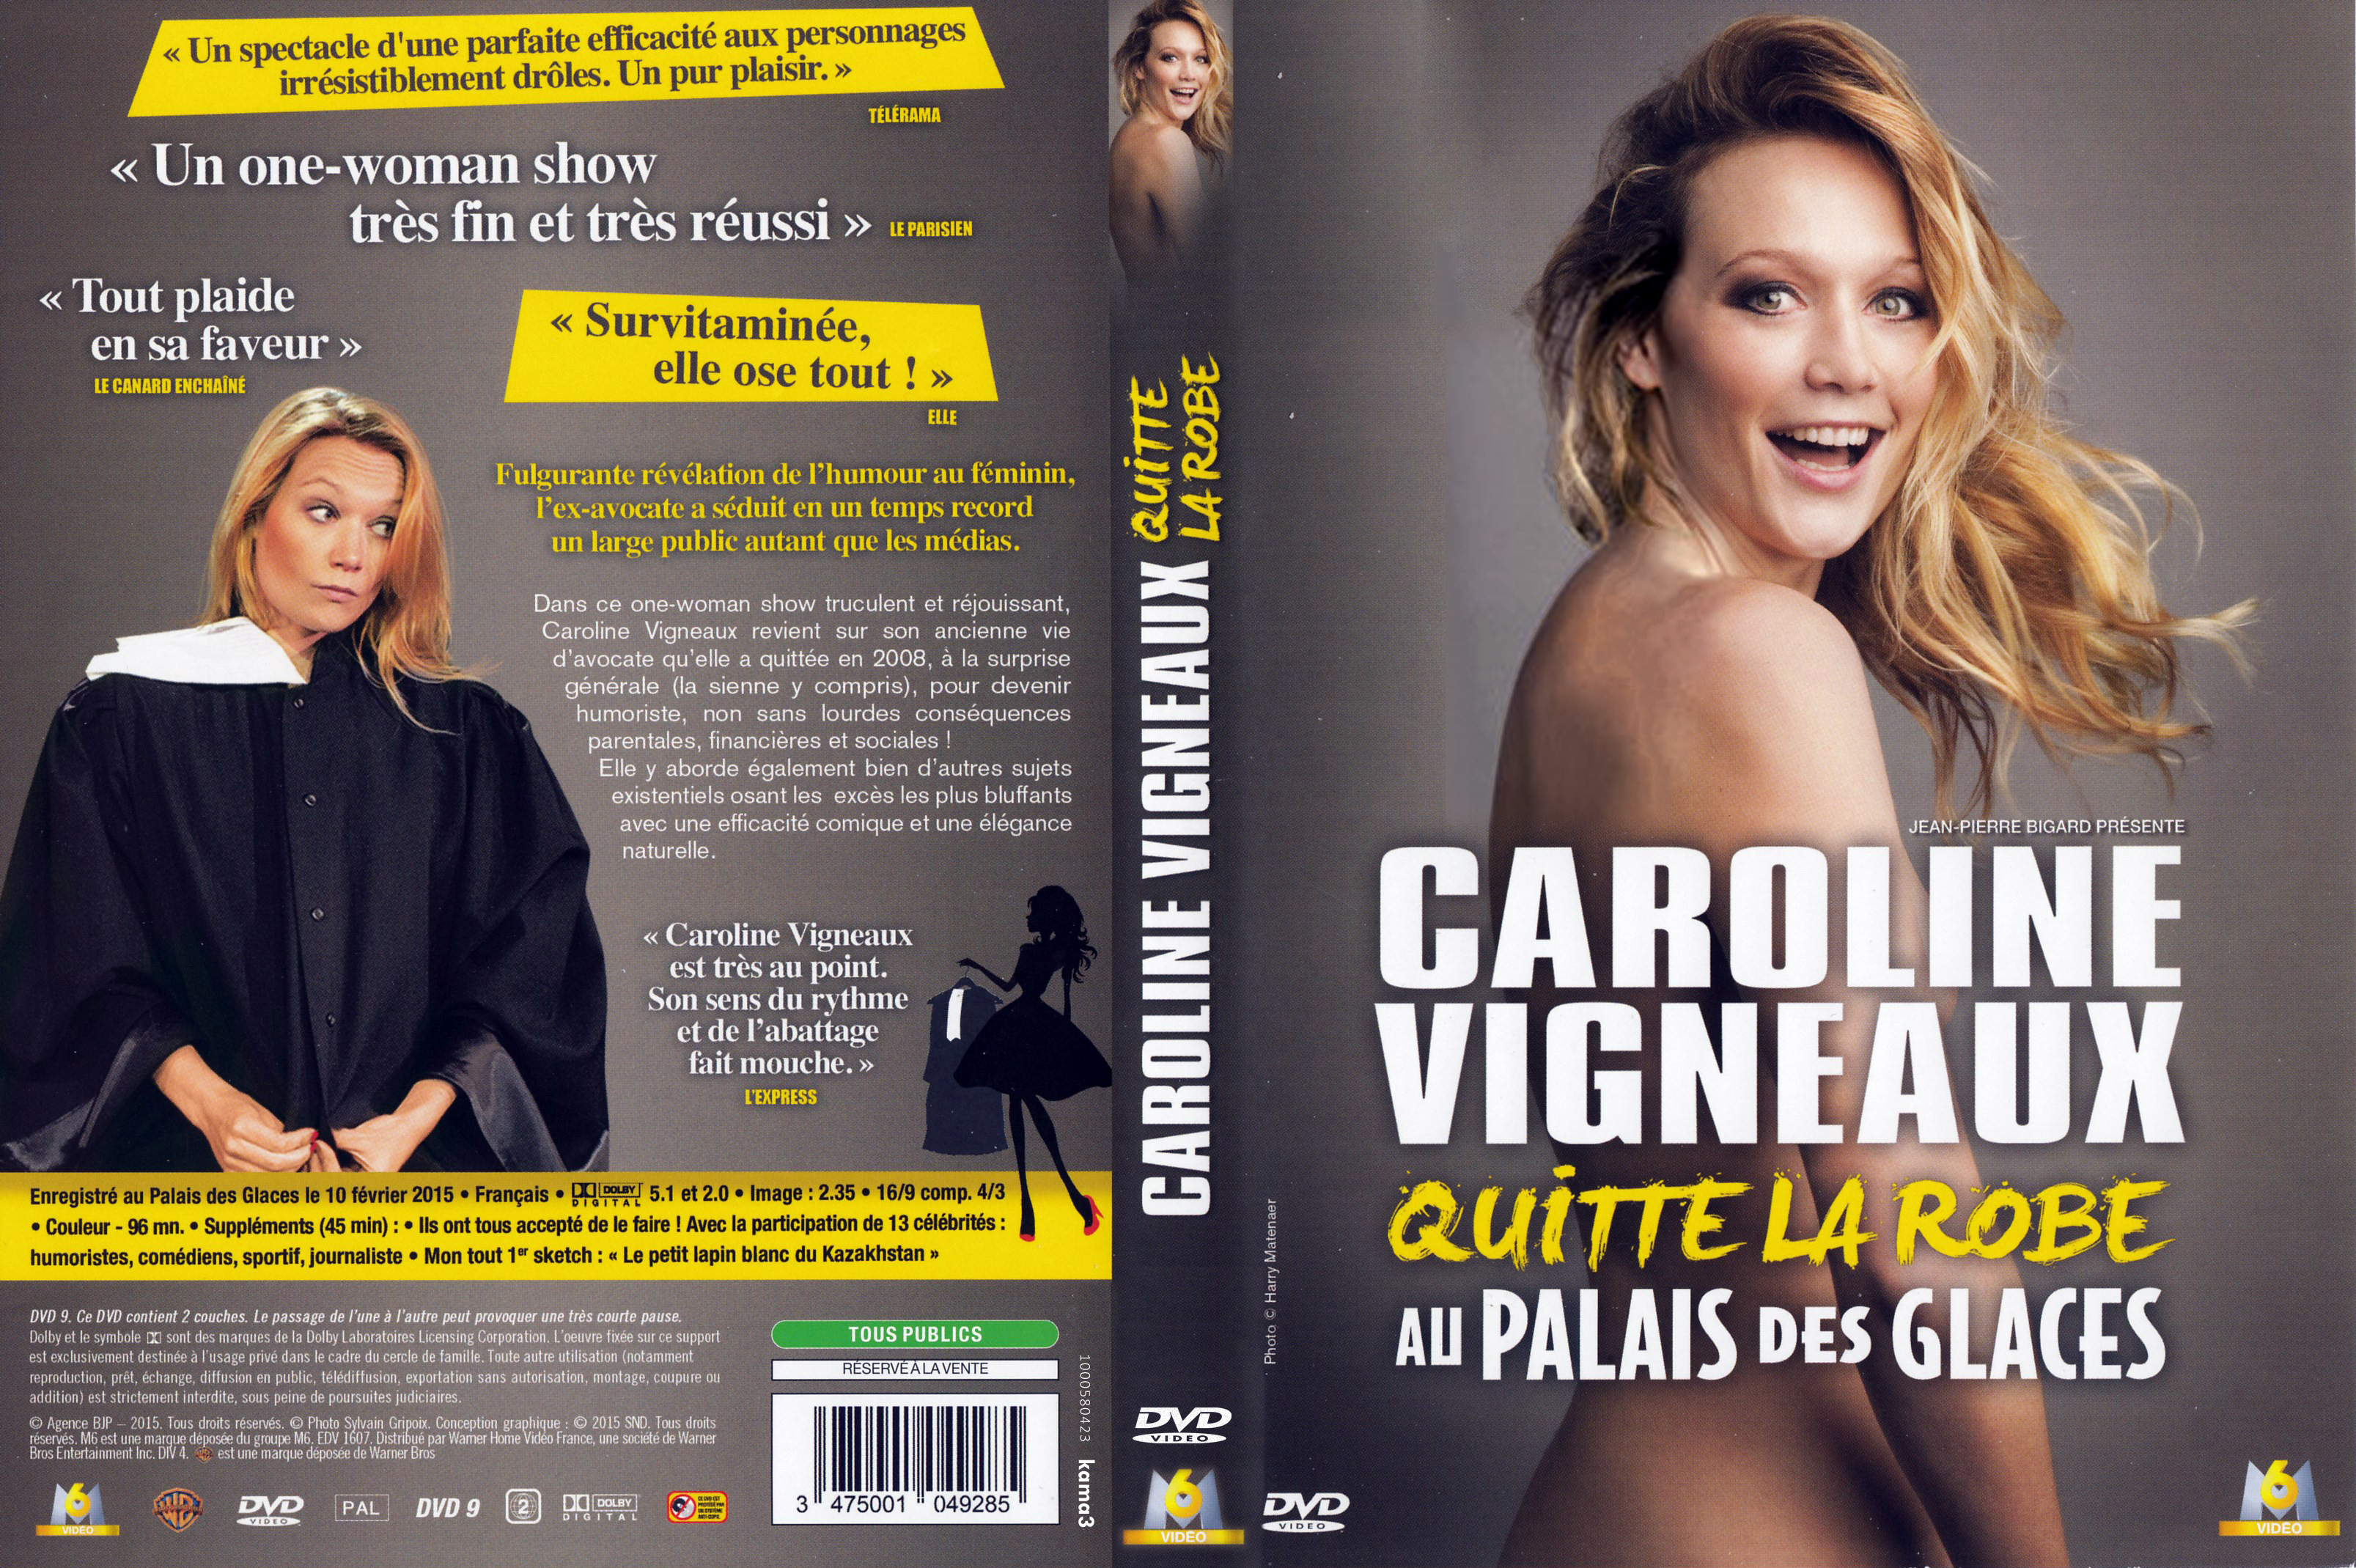 Jaquette DVD Caroline Vignieaux quitte la robe